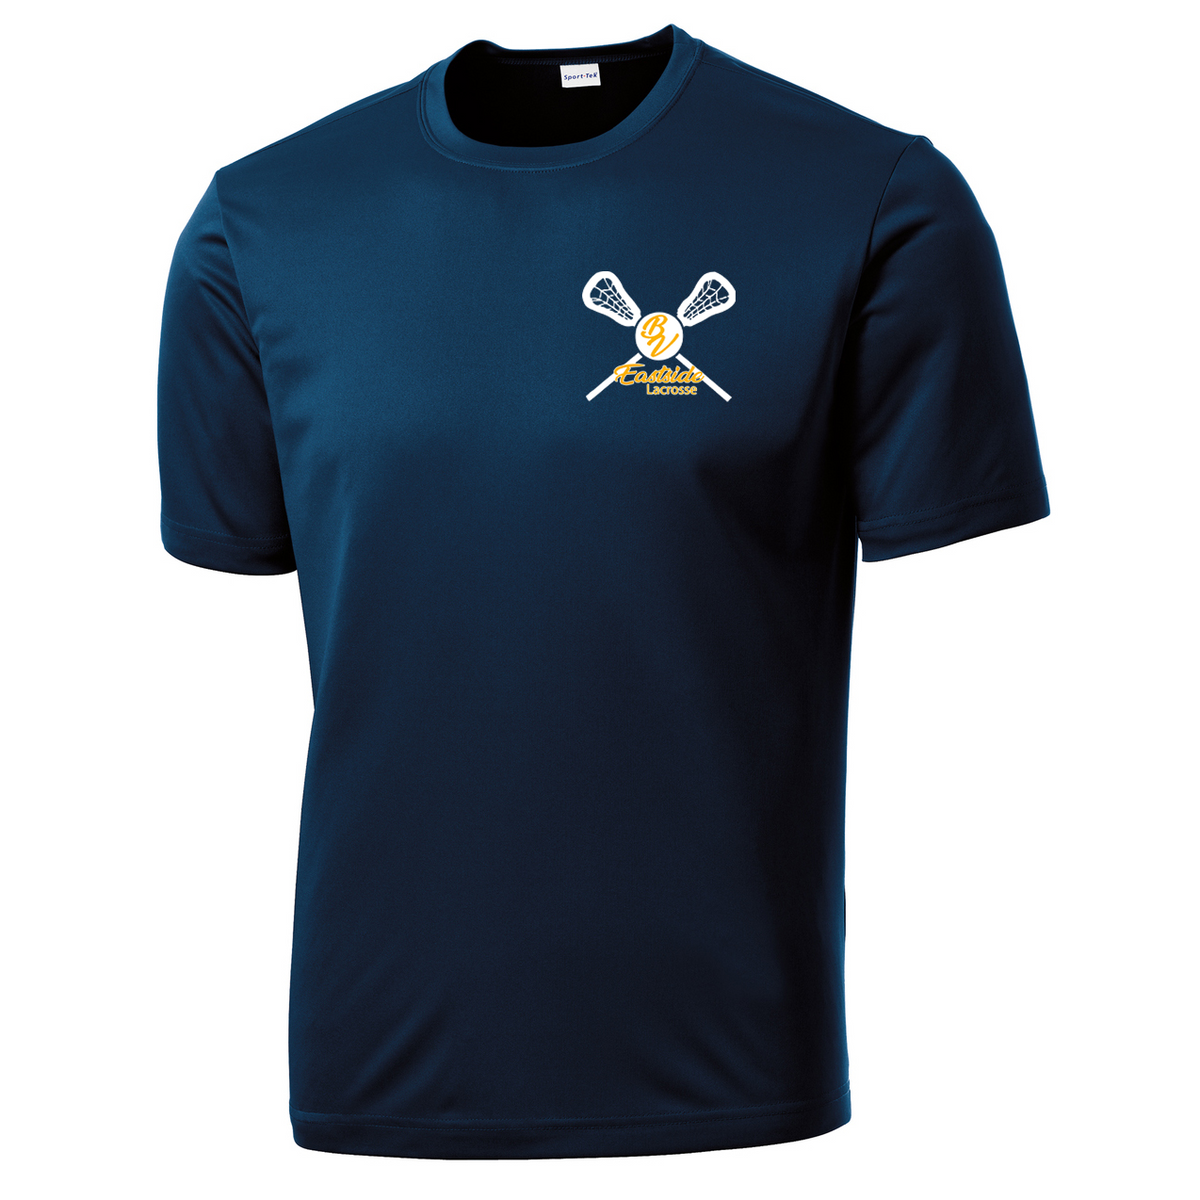 BV Eastside Lacrosse Performance T-Shirt